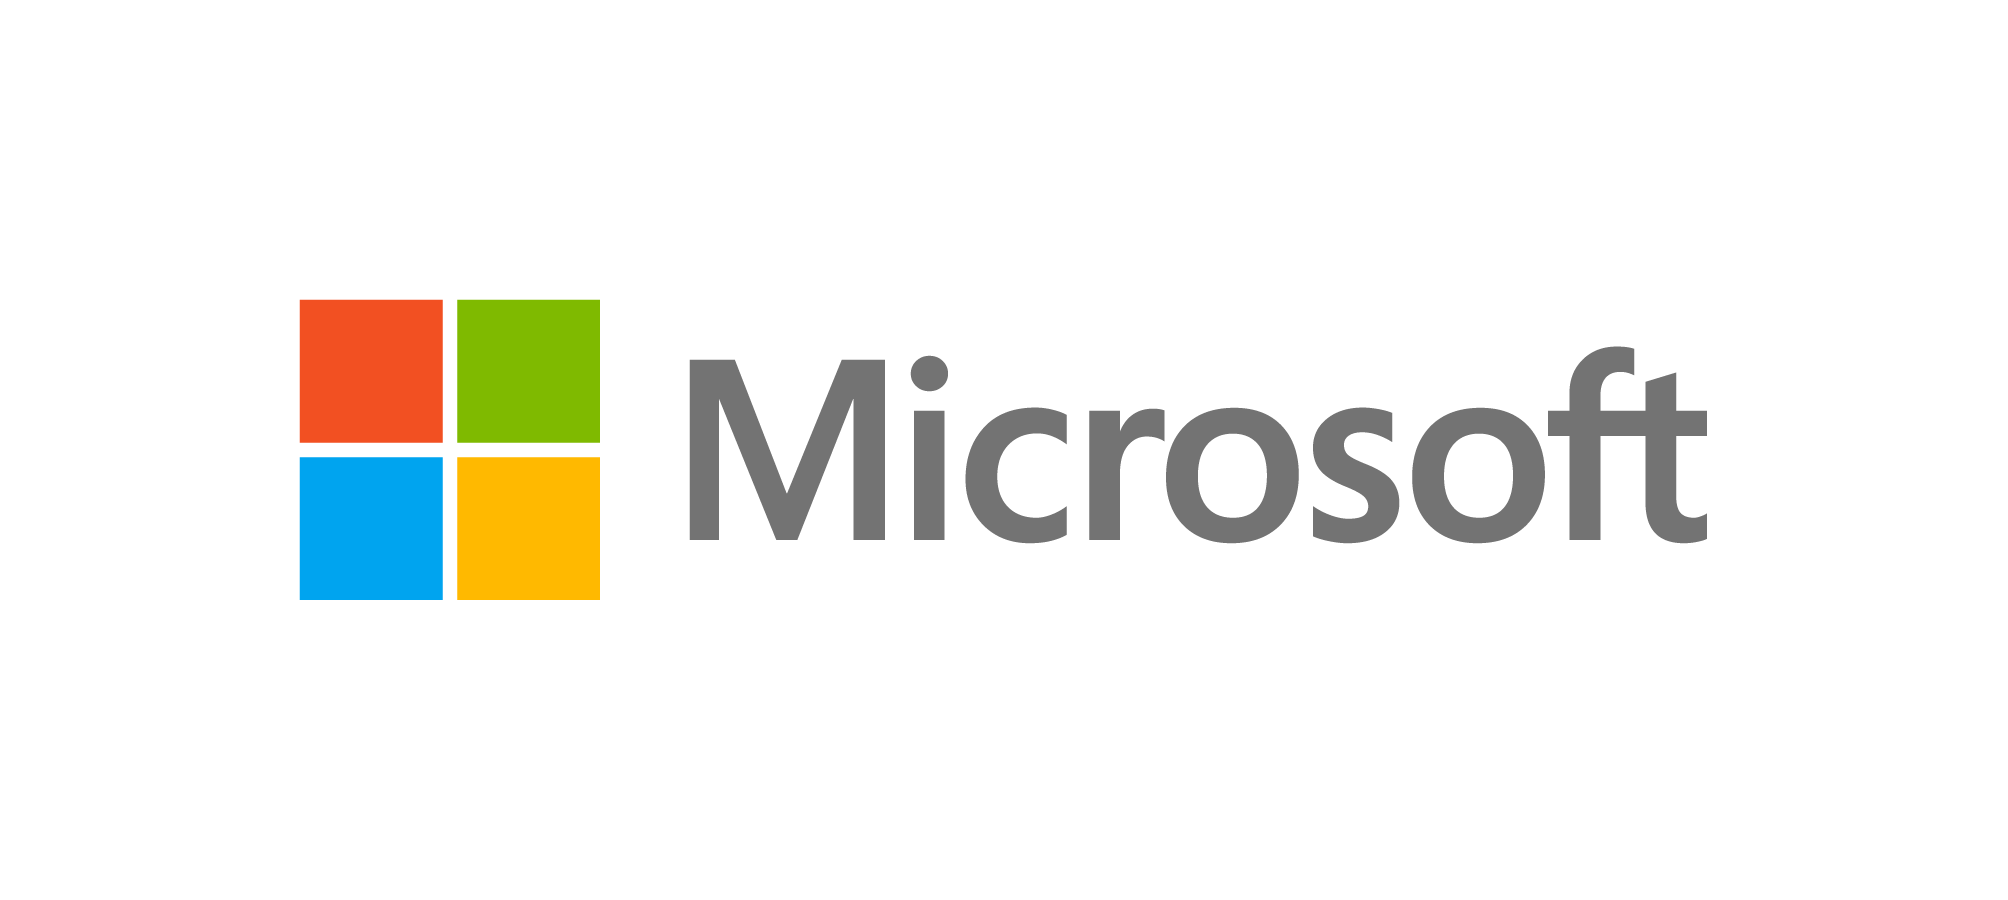 Microsoft - Corporate matching